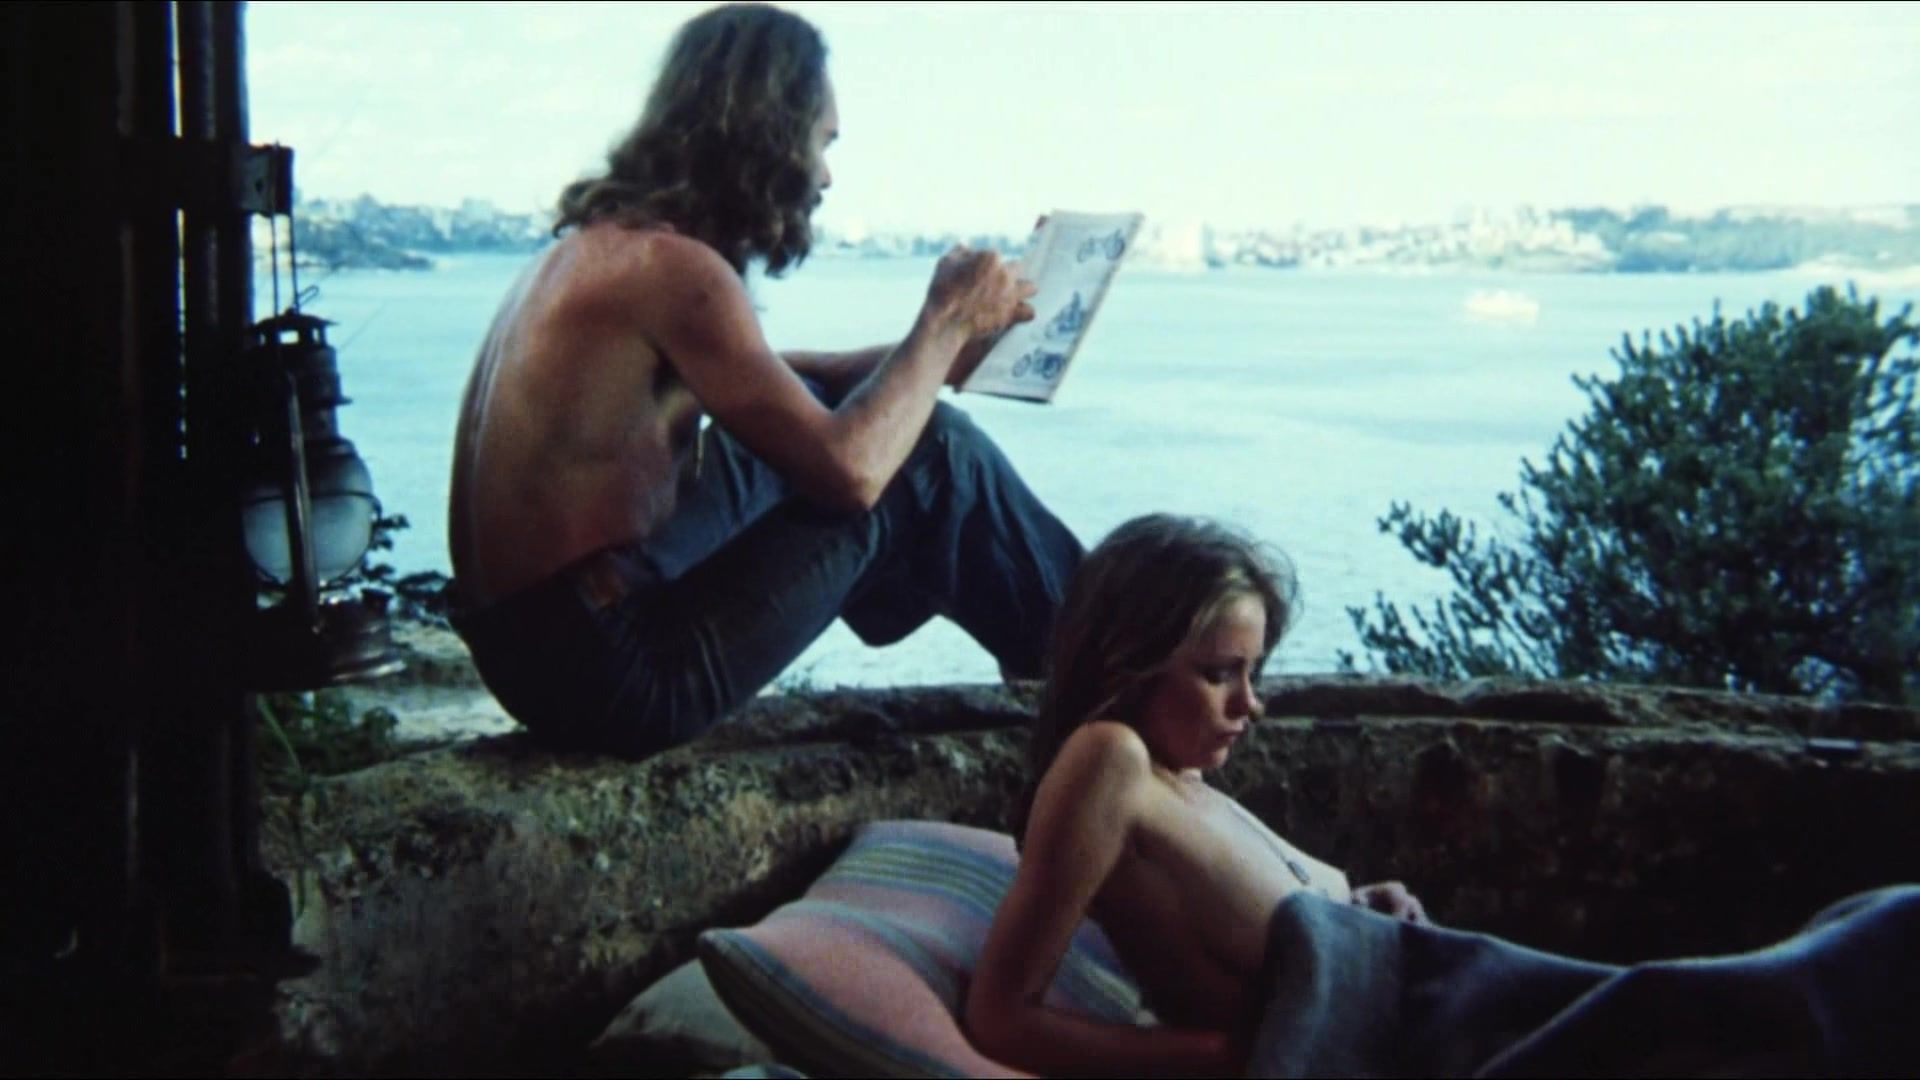 AssParade Classic Erotic Film "Stone" (1974) Chica